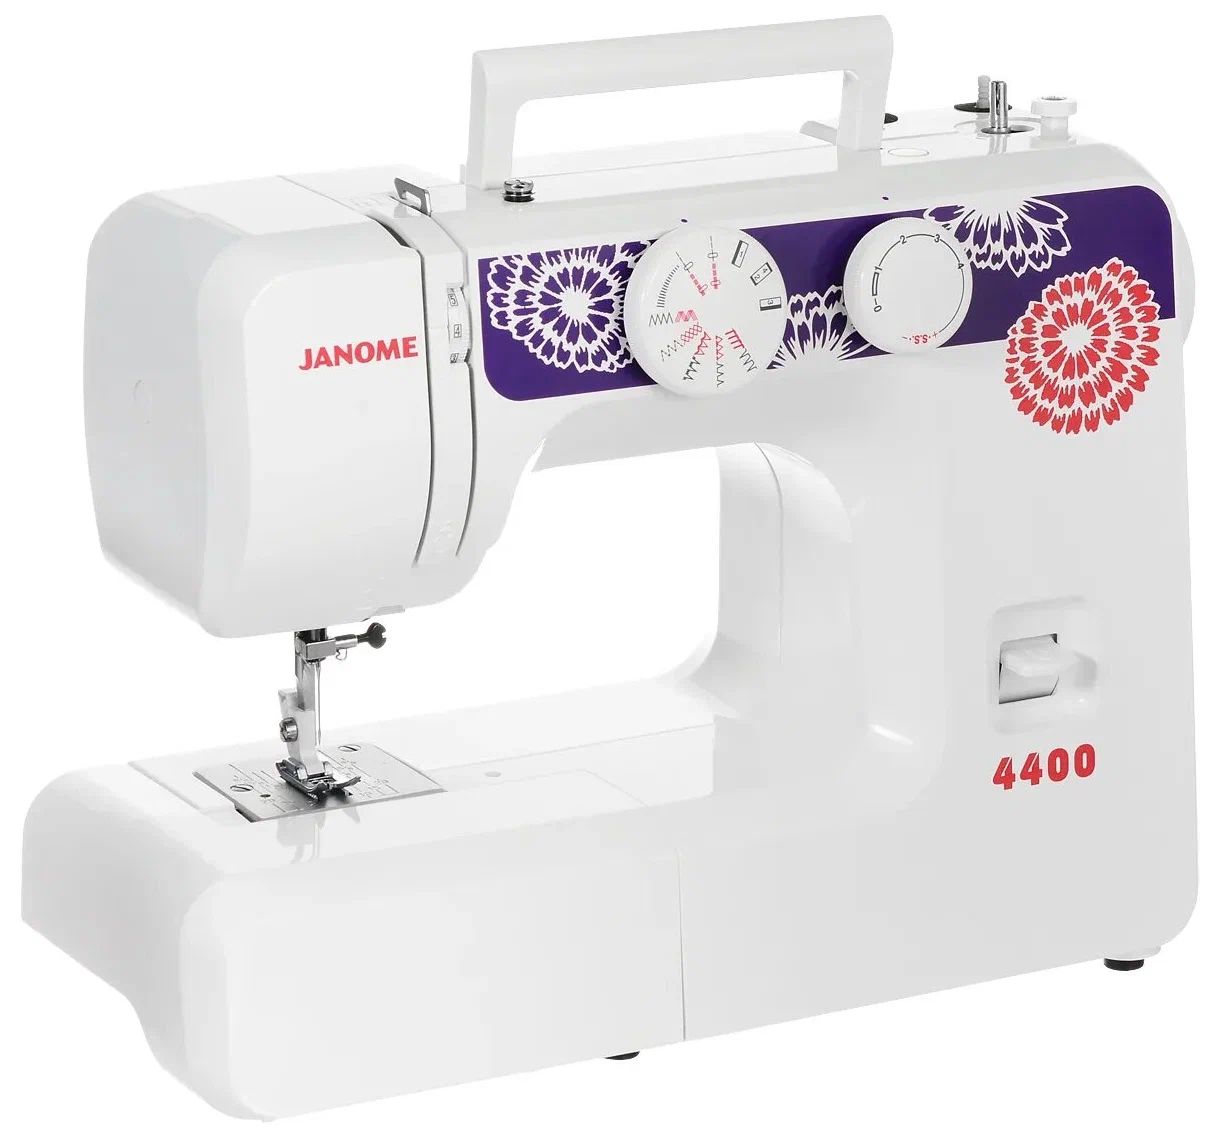 Швейная машина Janome 4400 белый, фиолетовый швейная машина classmark wj23071901 белый фиолетовый